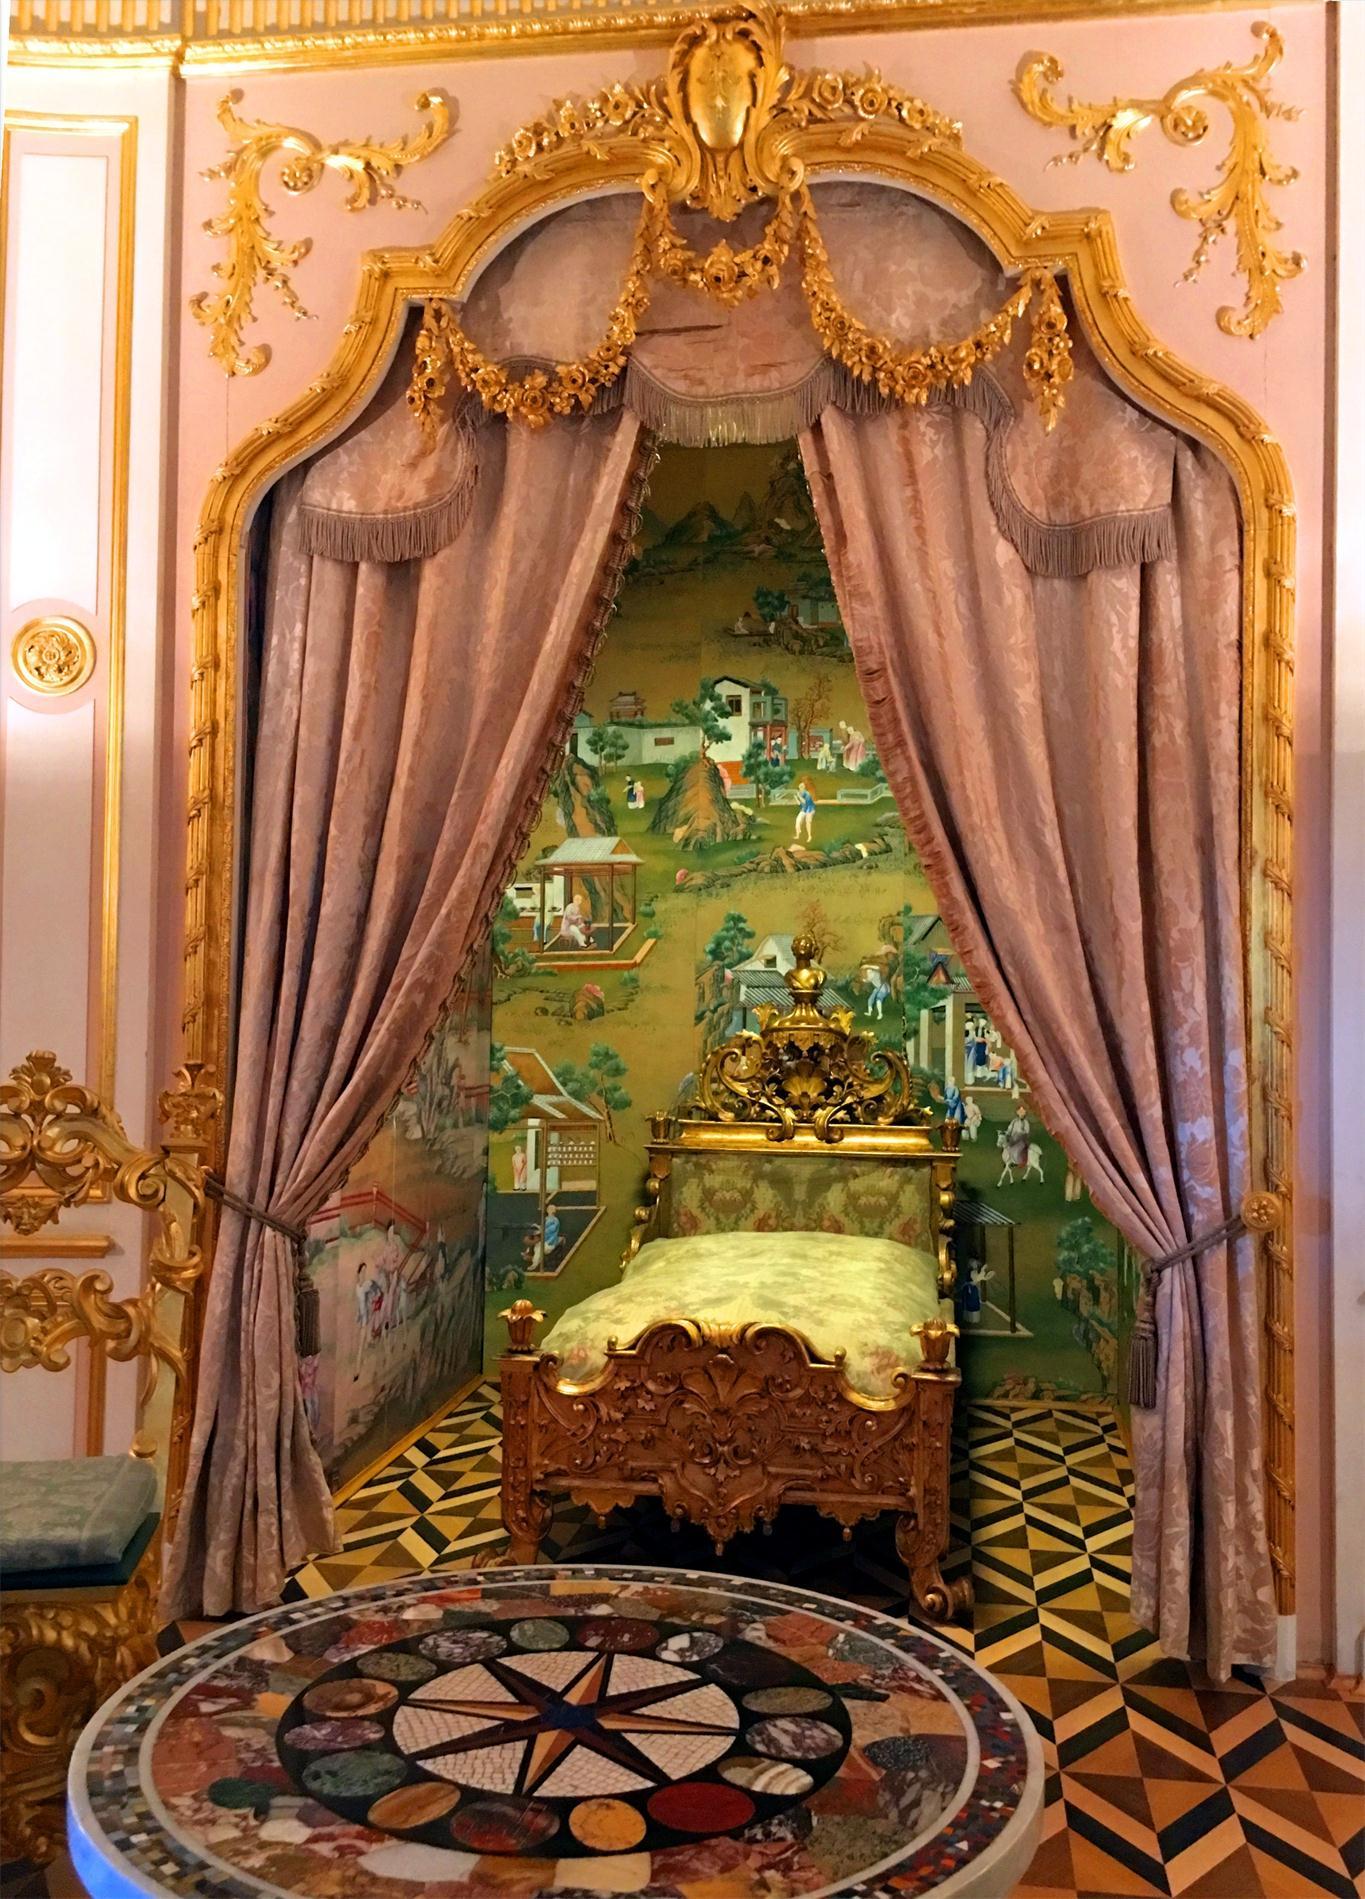 俄罗斯 夏宫 彼得大帝夏宫 上 宫殿内部游览 100多幅图 知乎